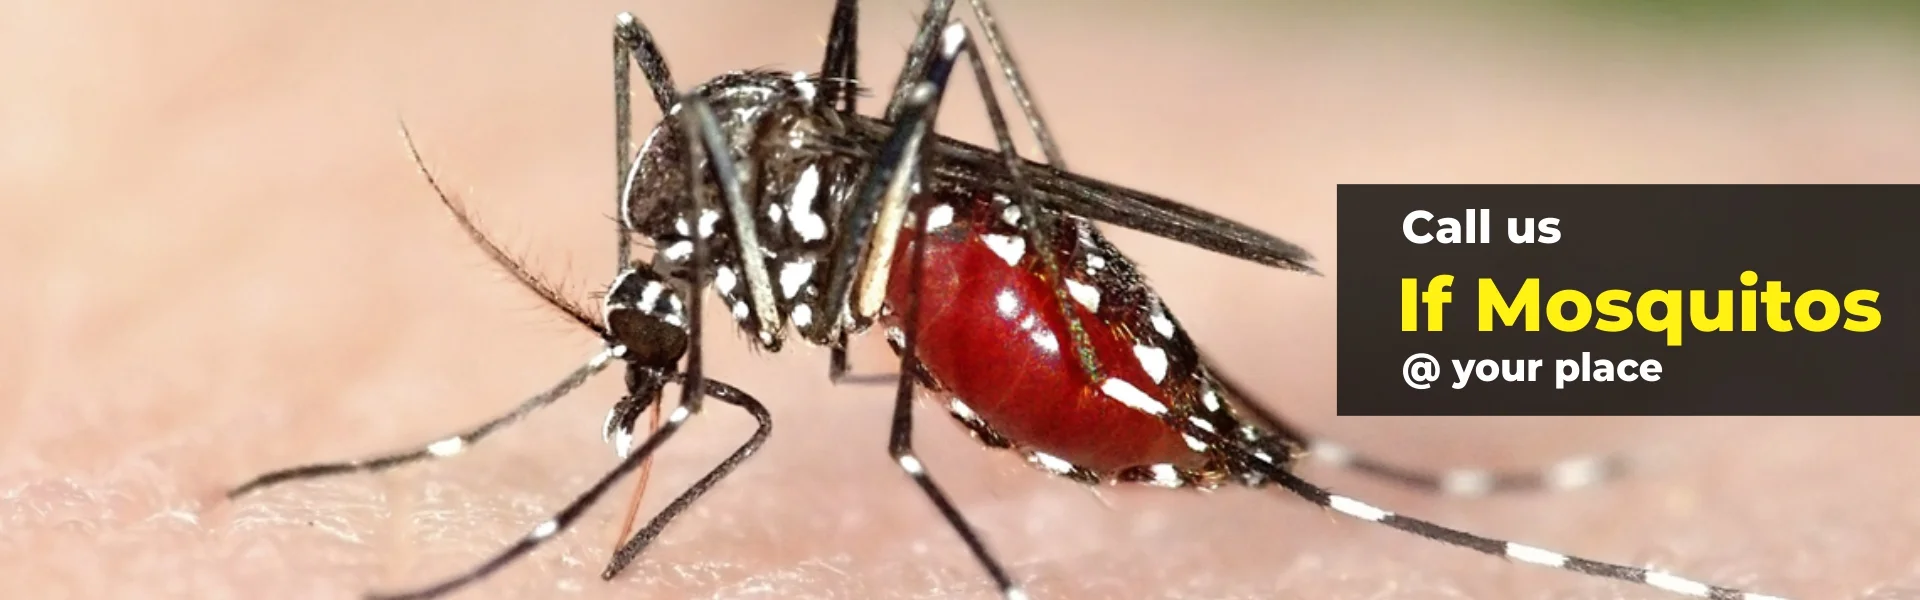 mosquito control control in chennai